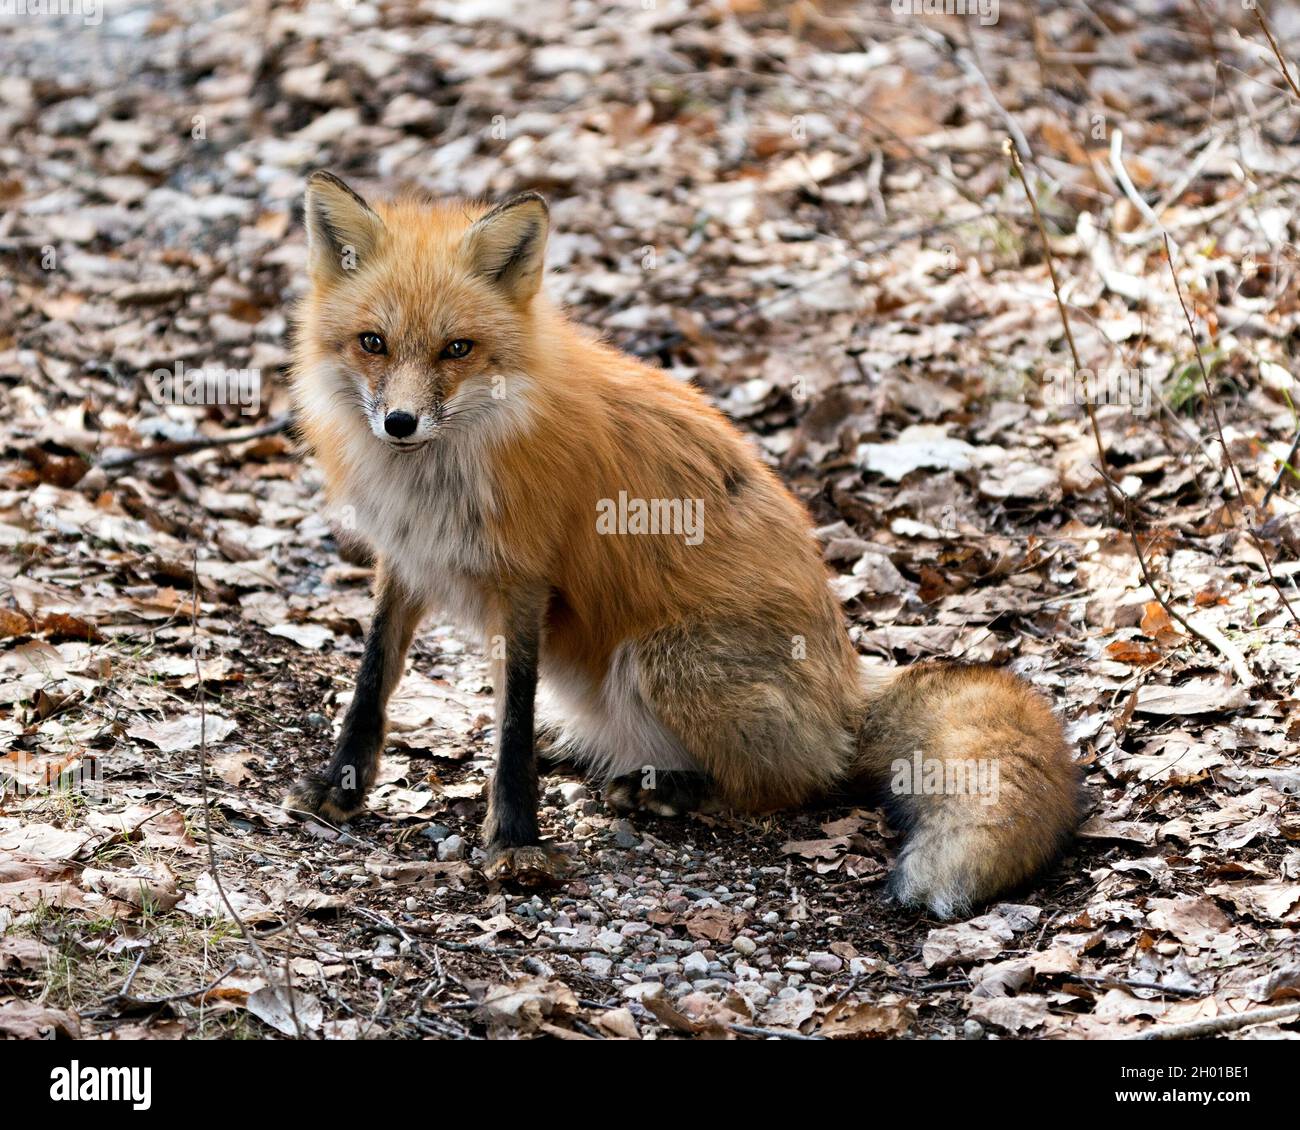 Renard roux assis sur un fond de feuilles brunes au printemps, montrant la queue de renard, la fourrure, dans son environnement et son habitat.Fox image.Image. Banque D'Images